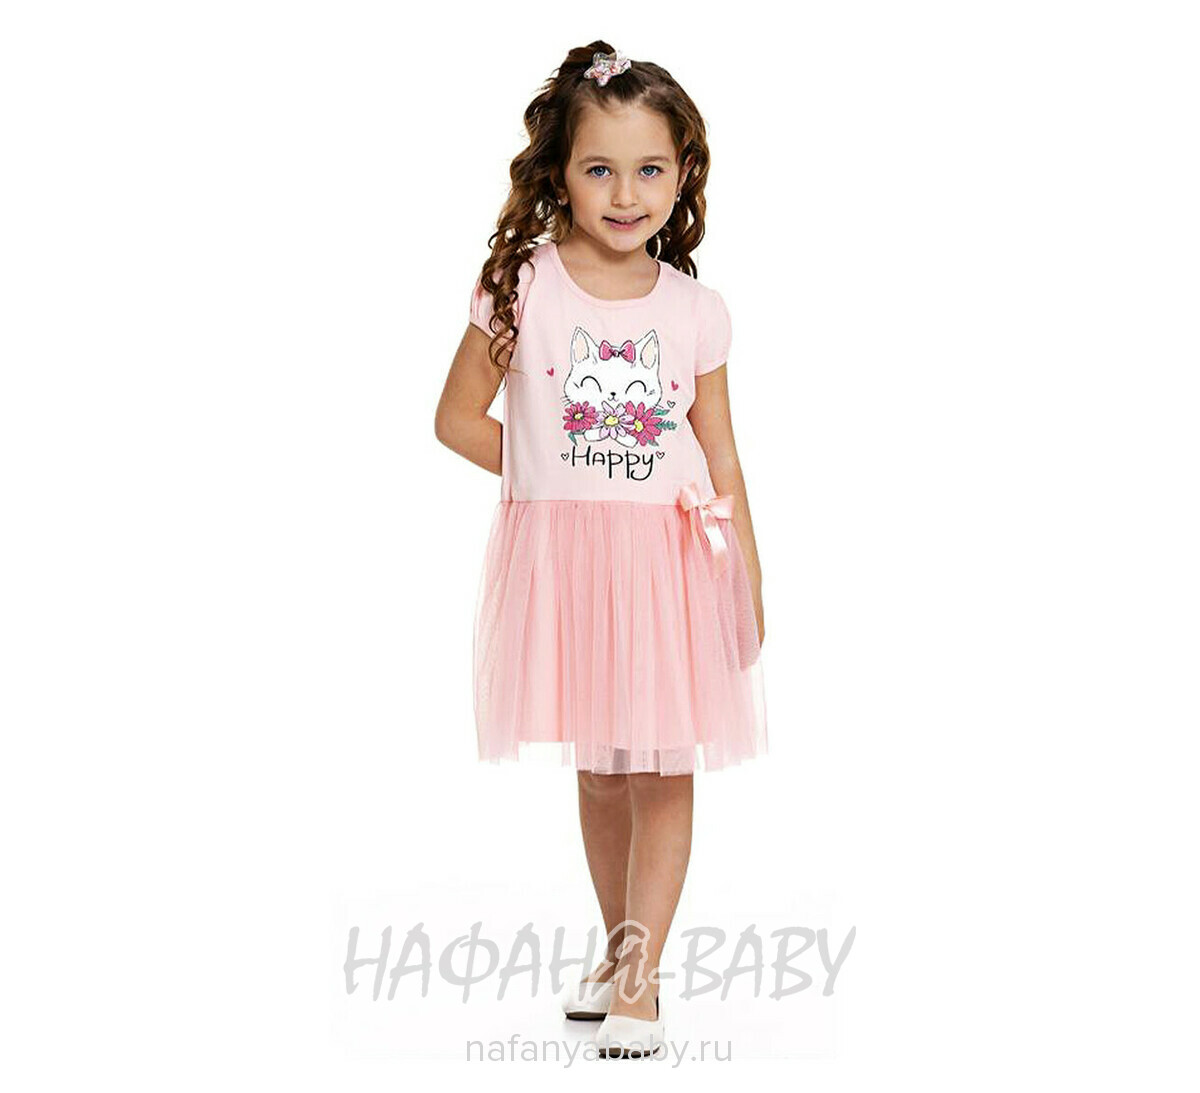 Платье трикотажное PF, купить в интернет магазине Нафаня. арт: 6827, цвет персиковый